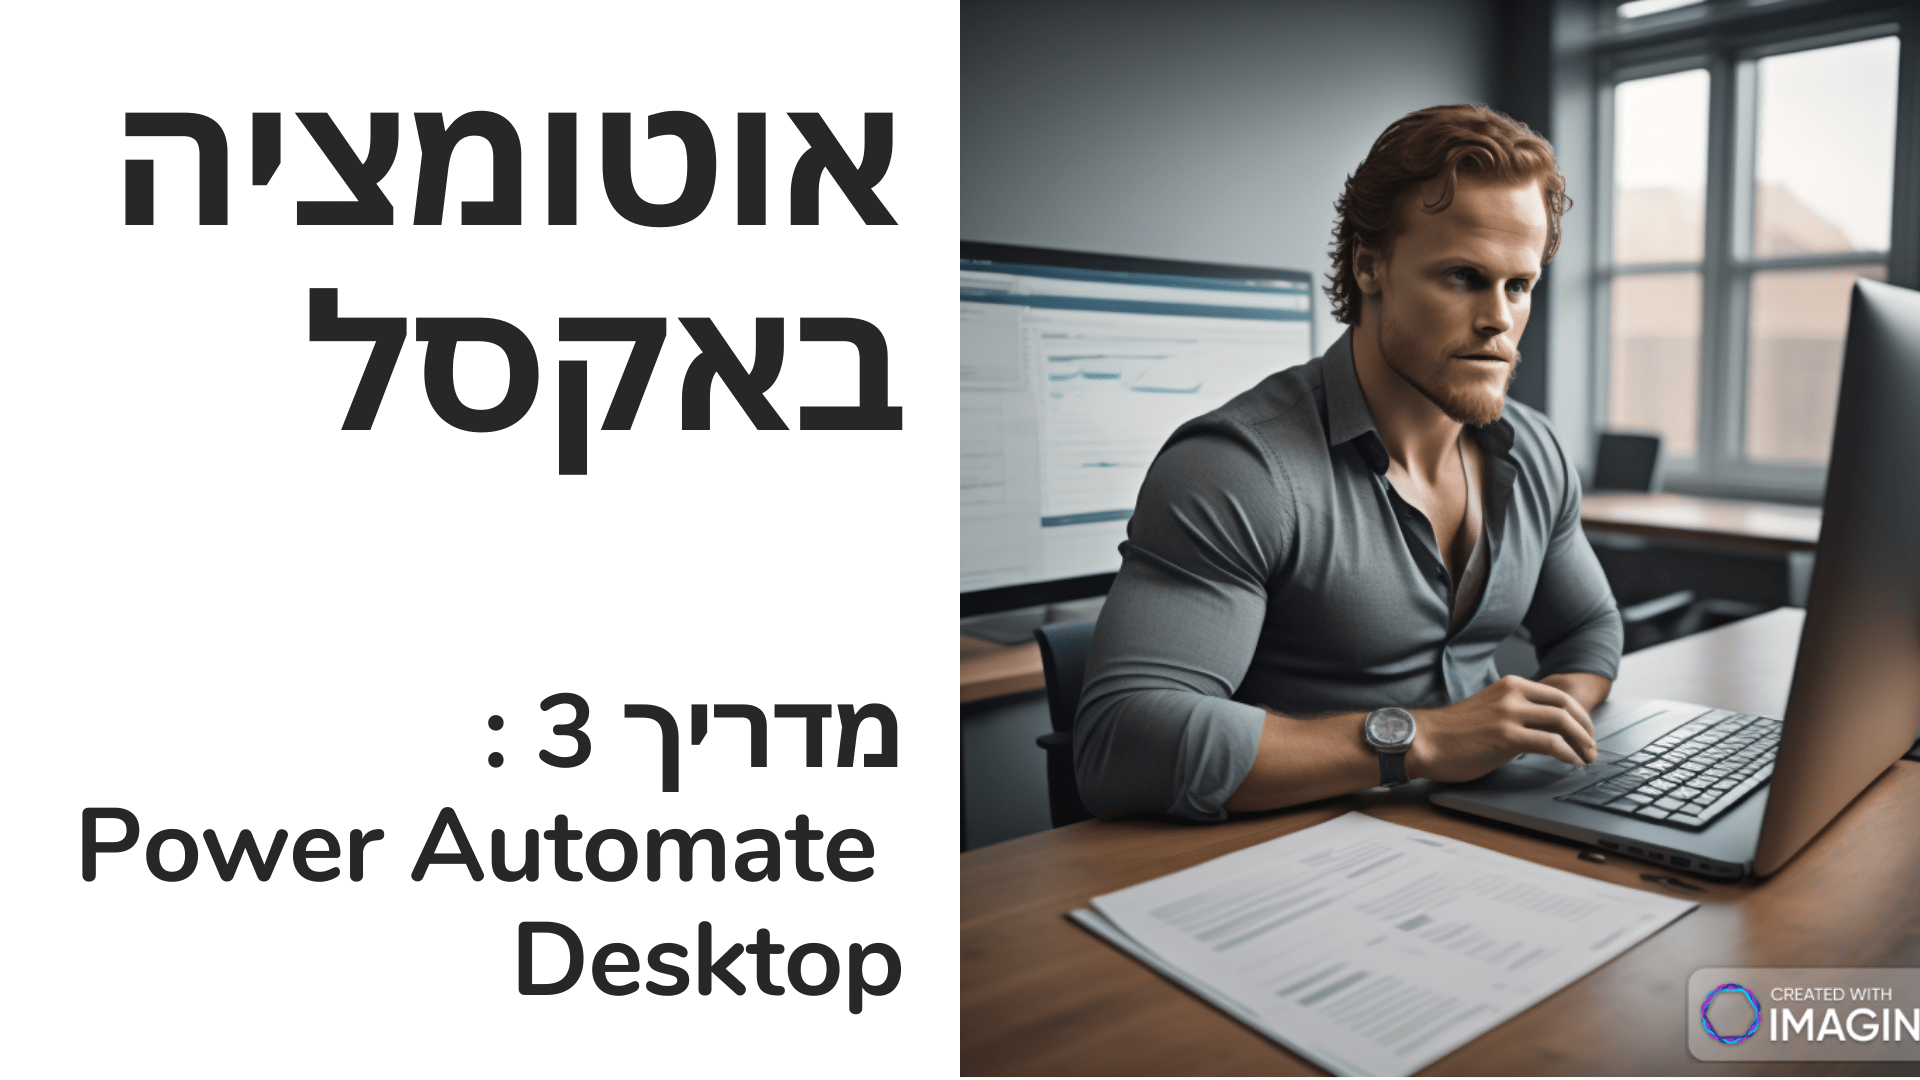 讗讜讟讜诪爪讬讛 讘- Excel. 诪讚专讬讱 3 注诇 Power Automate Desktop